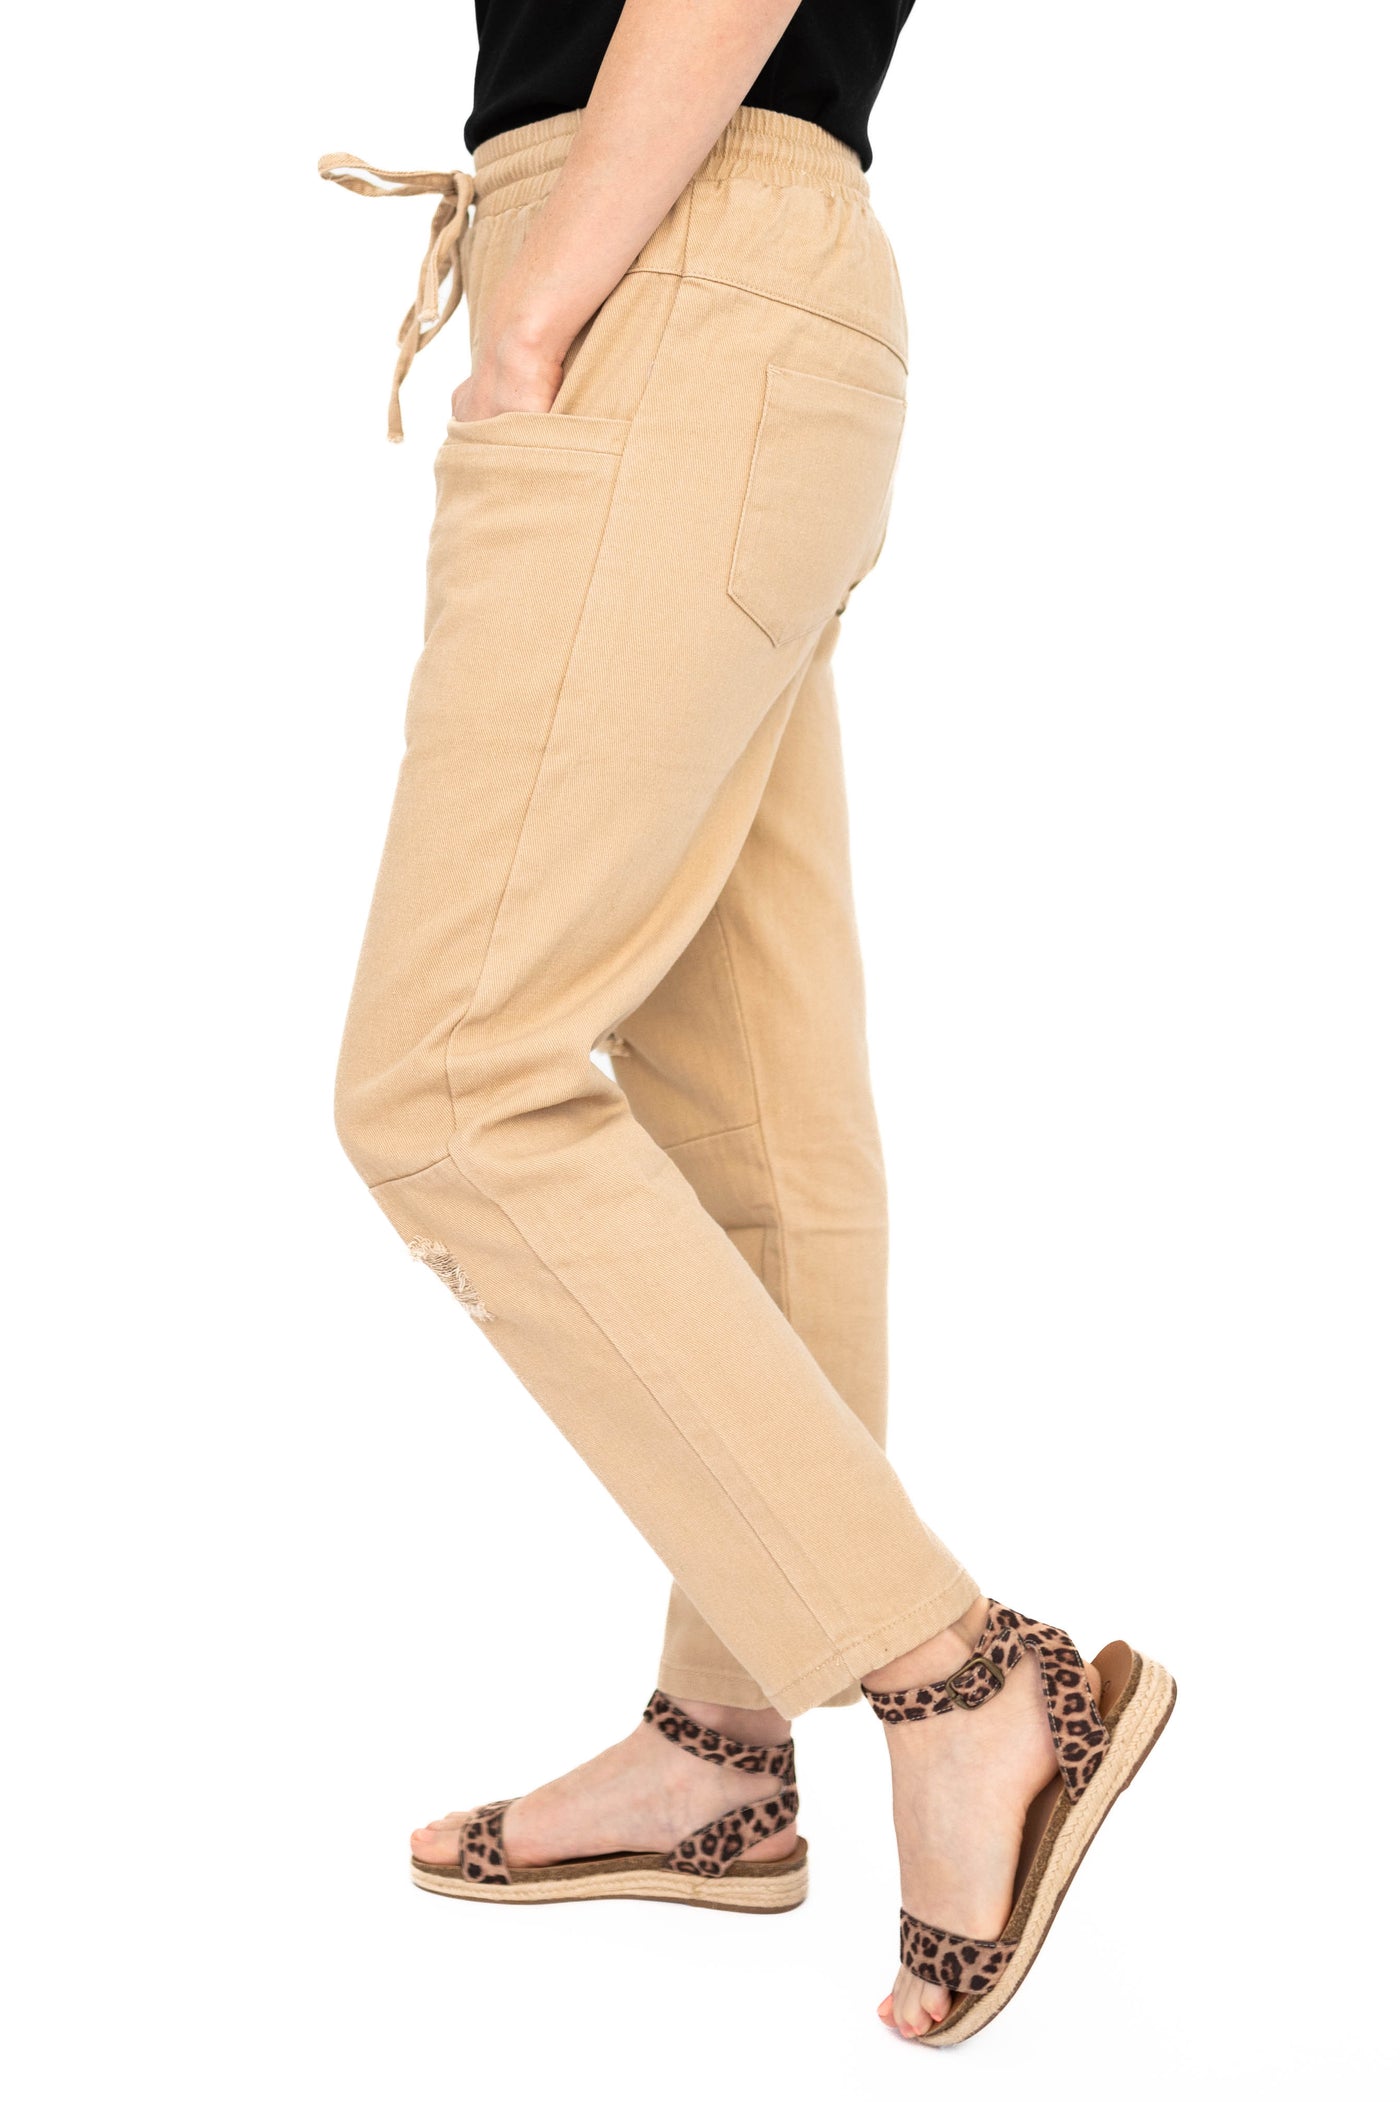 Side view of khaki pants